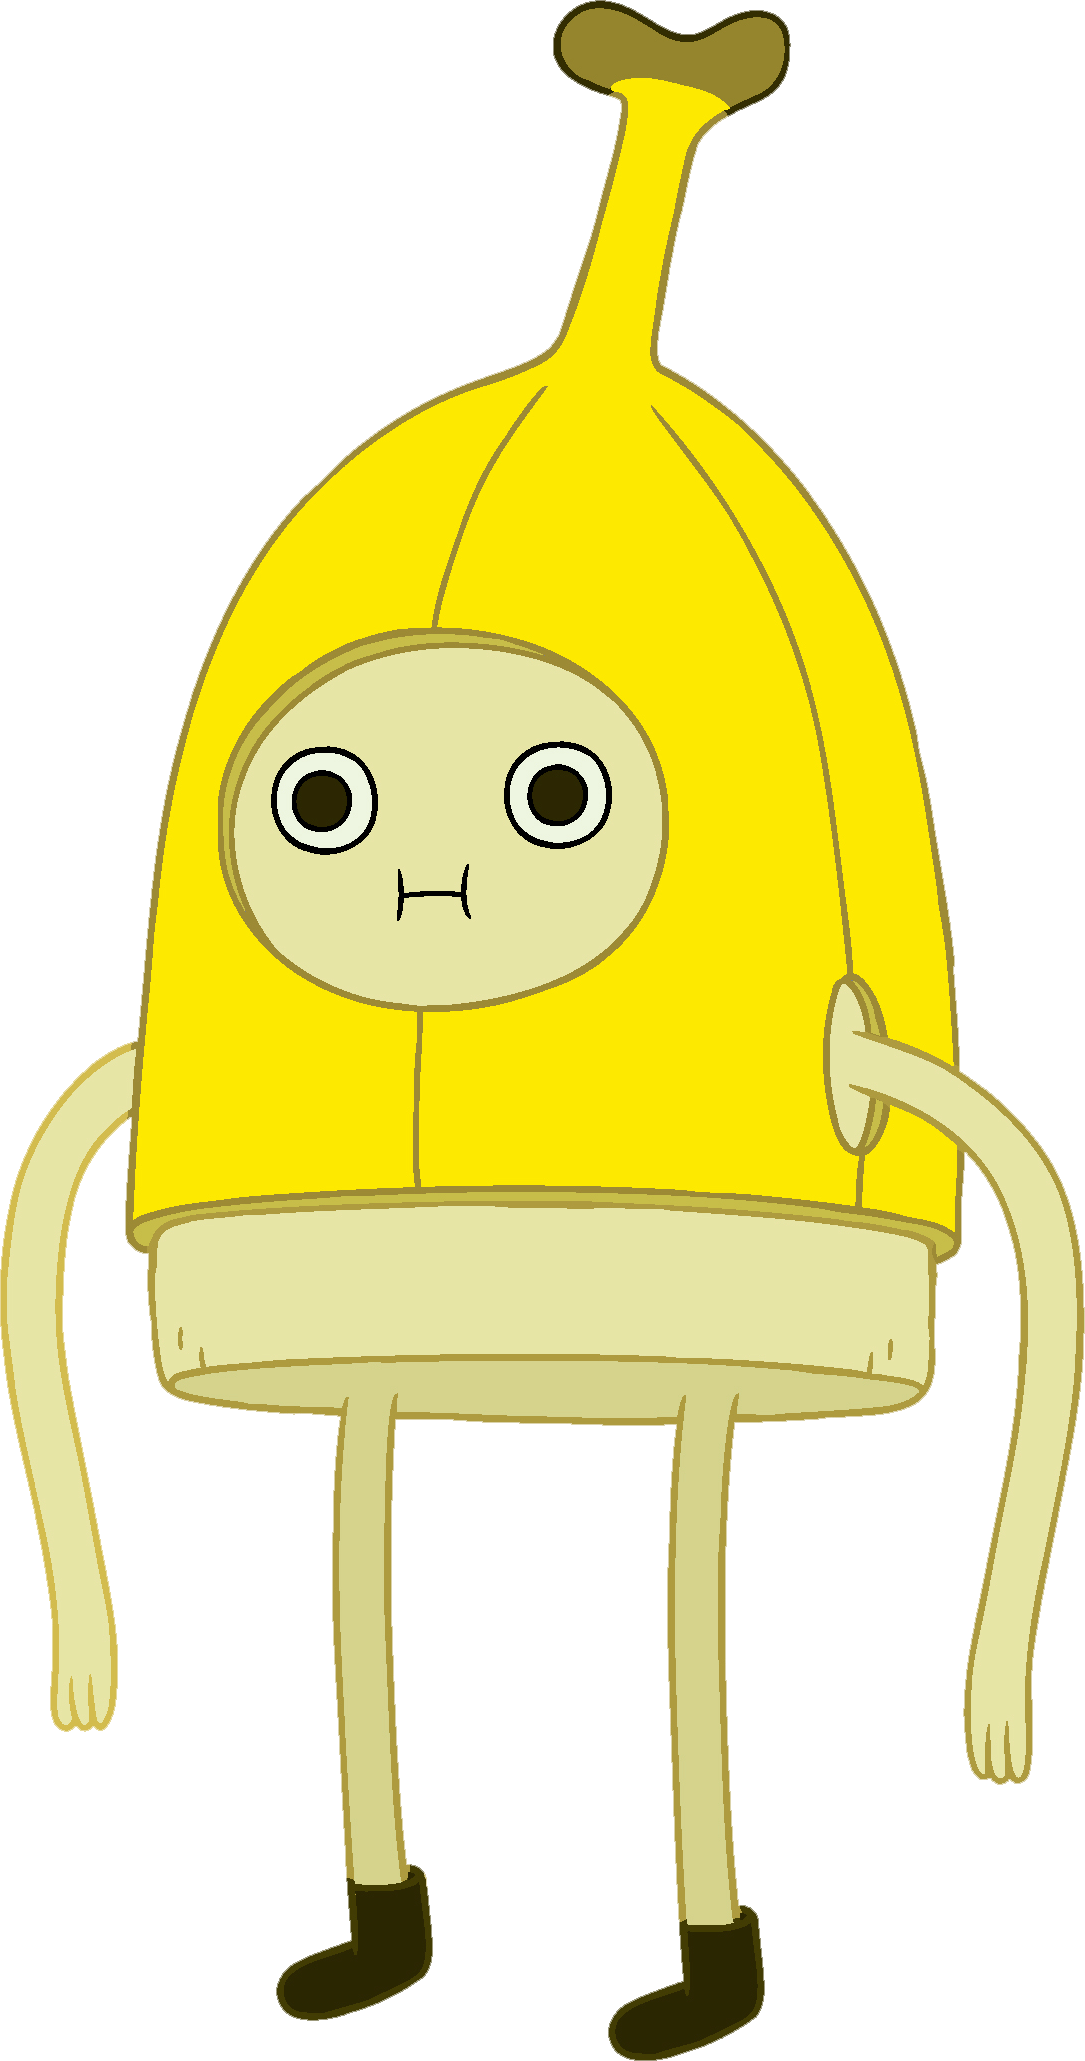 Banana banana man